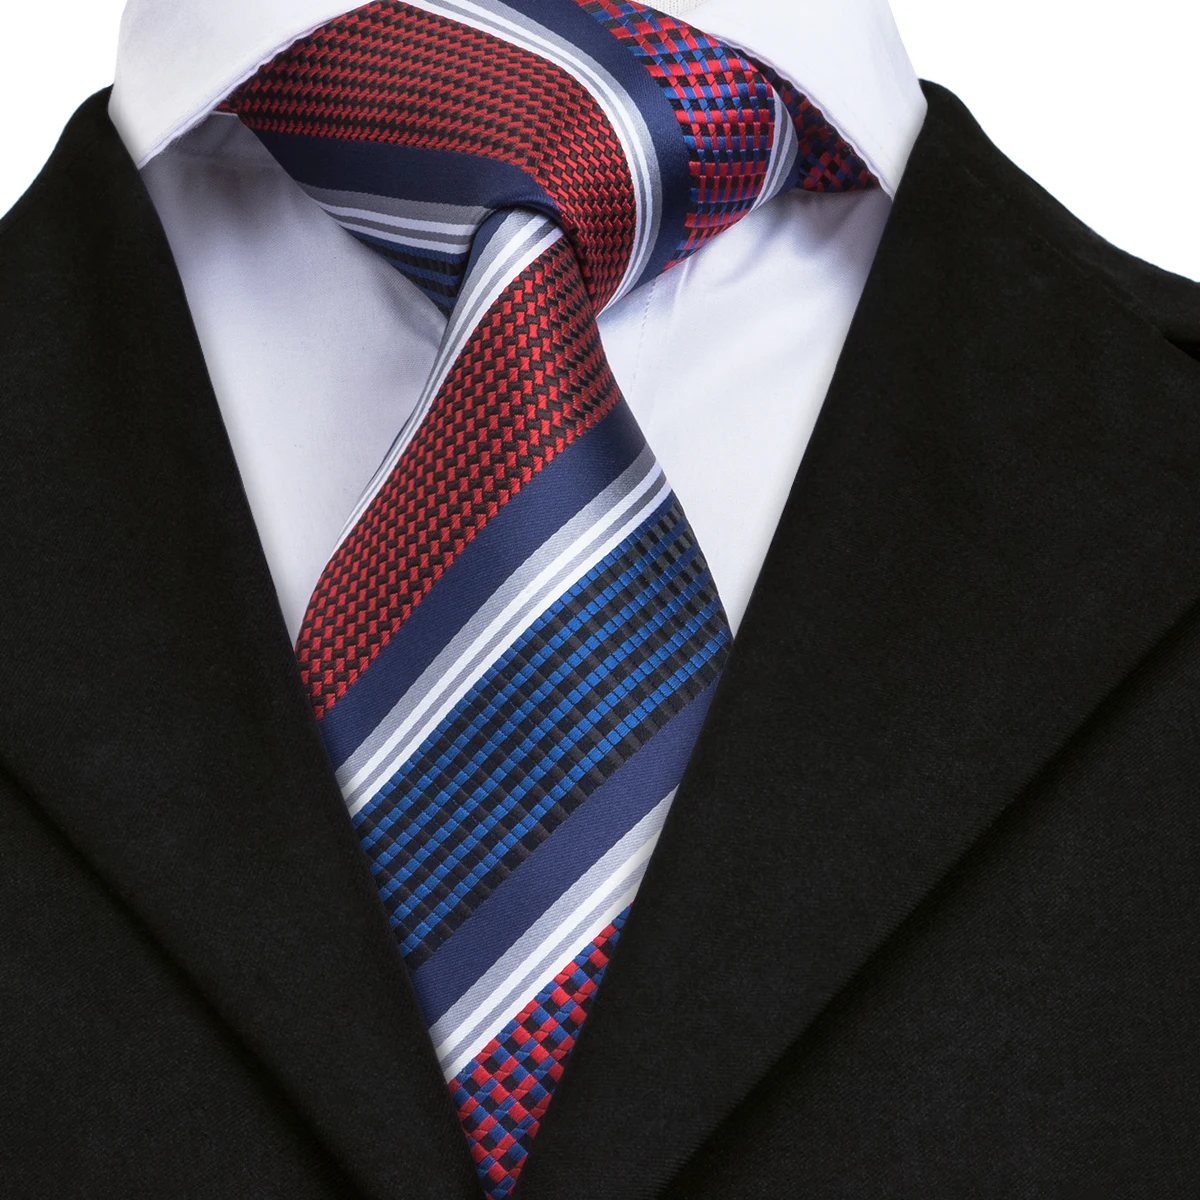 C-1695 Привет-галстук Gravatas связей для Для мужчин полосатый галстук Hanky Cuffinks 100% шелк 8,5 см платок костюм бизнес